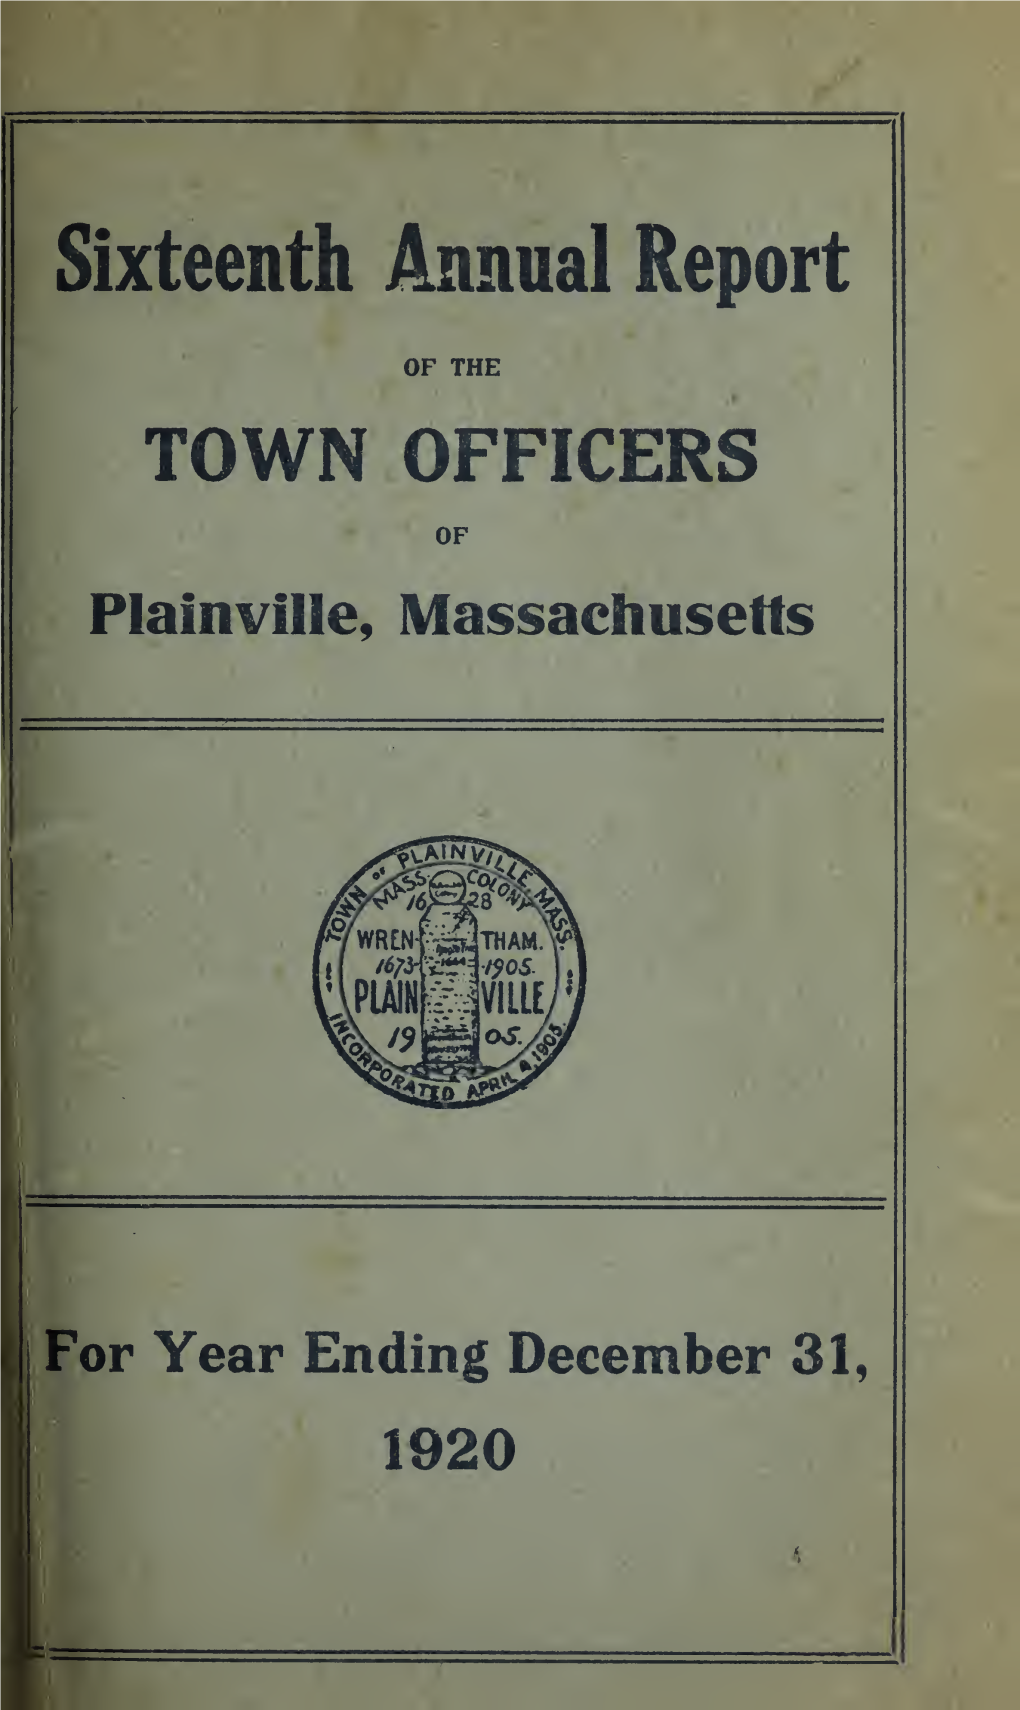 Plainville-1920.Pdf (8.937Mb)